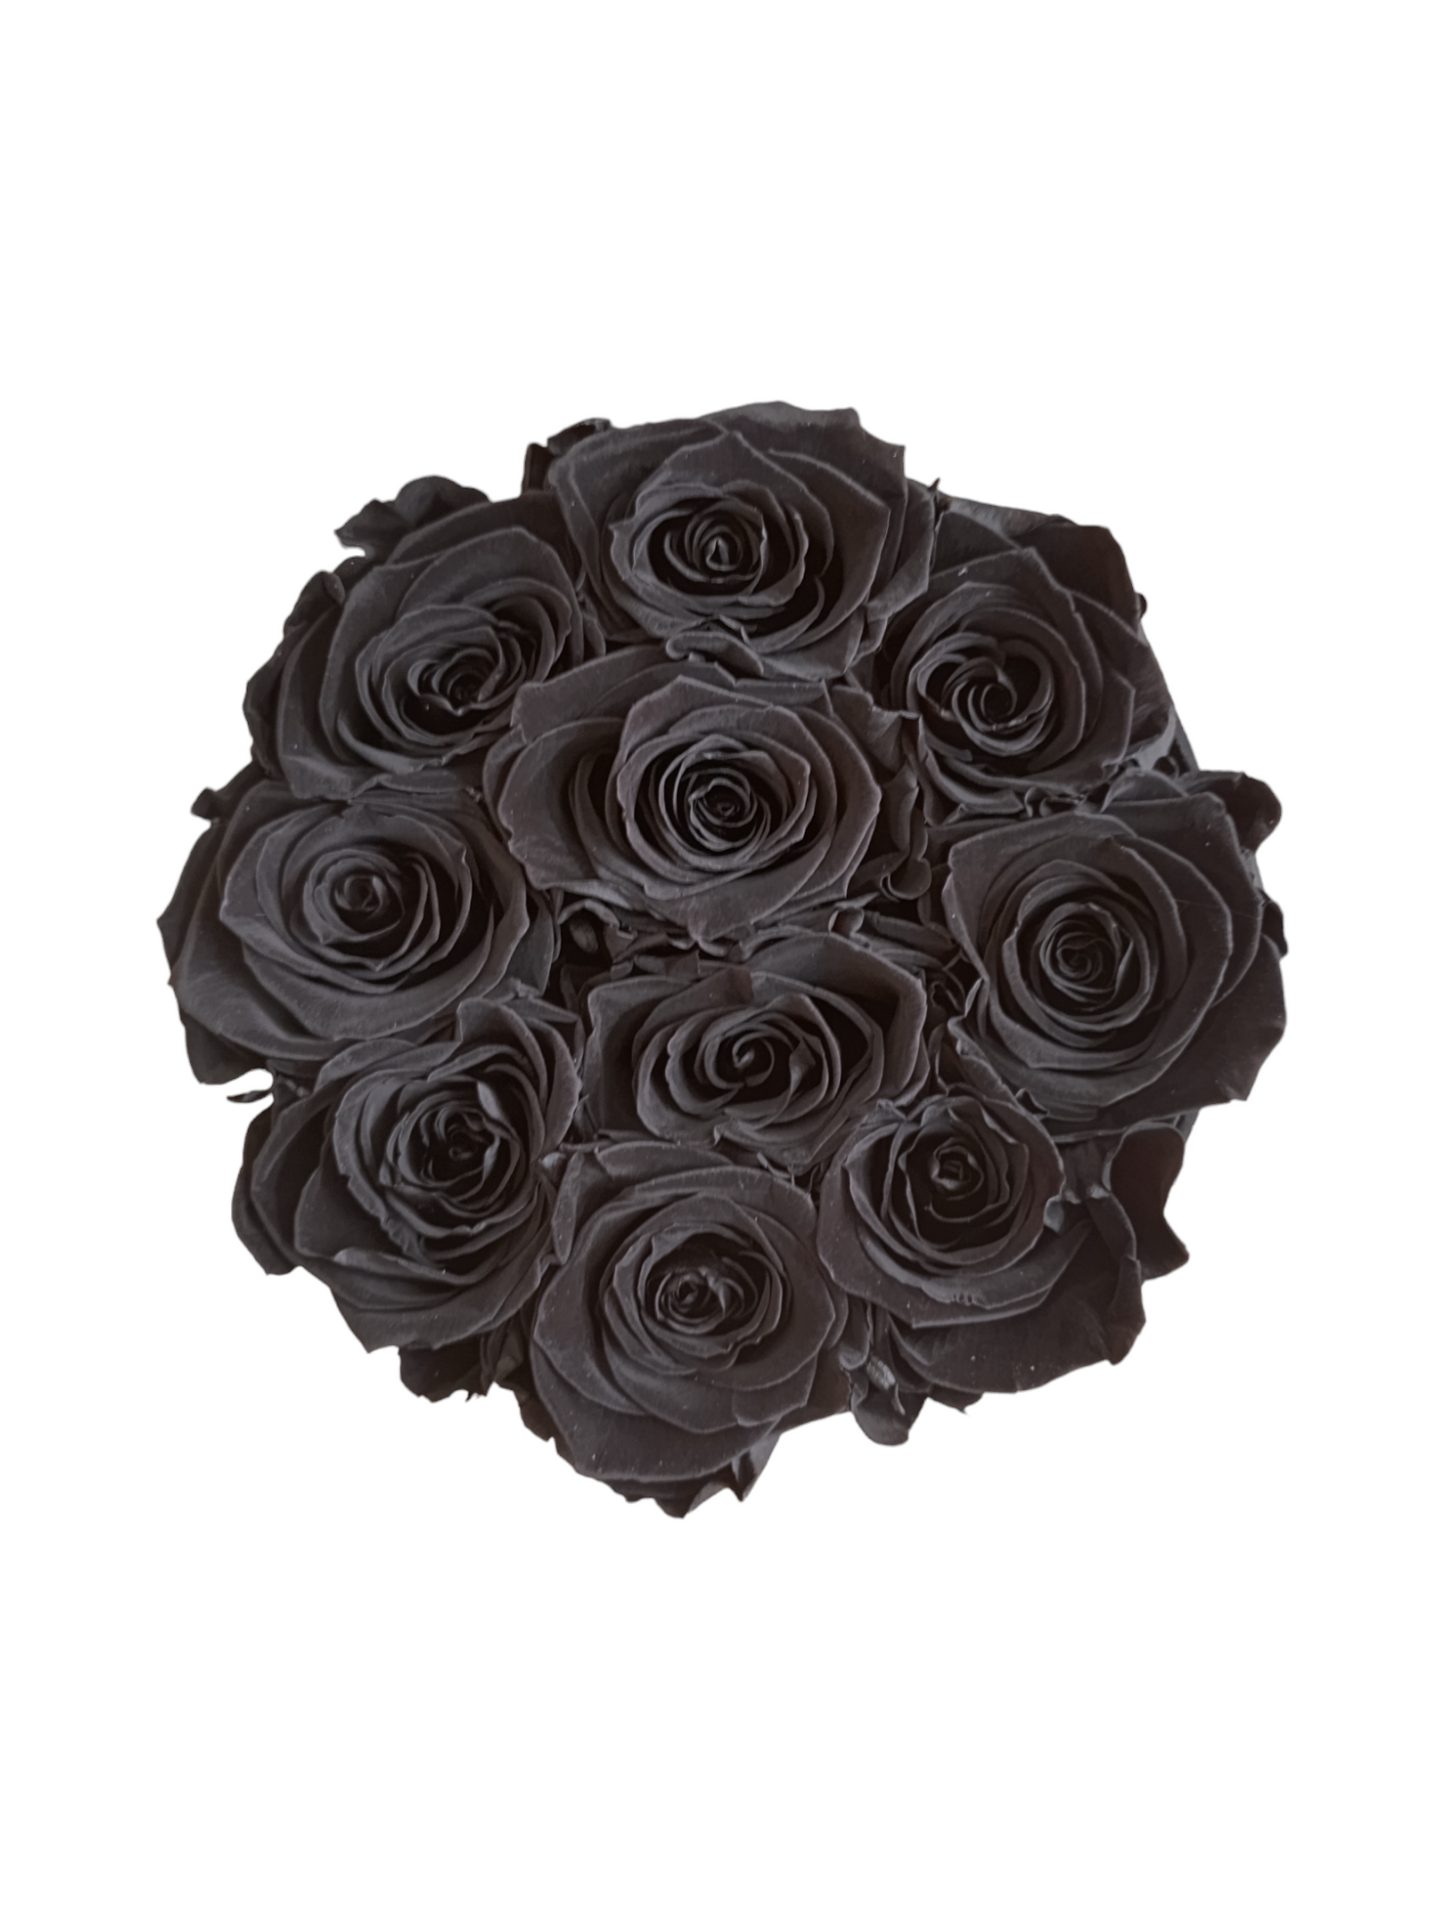 Coffret Luxe Noir M - Roses Stabilisées Noires